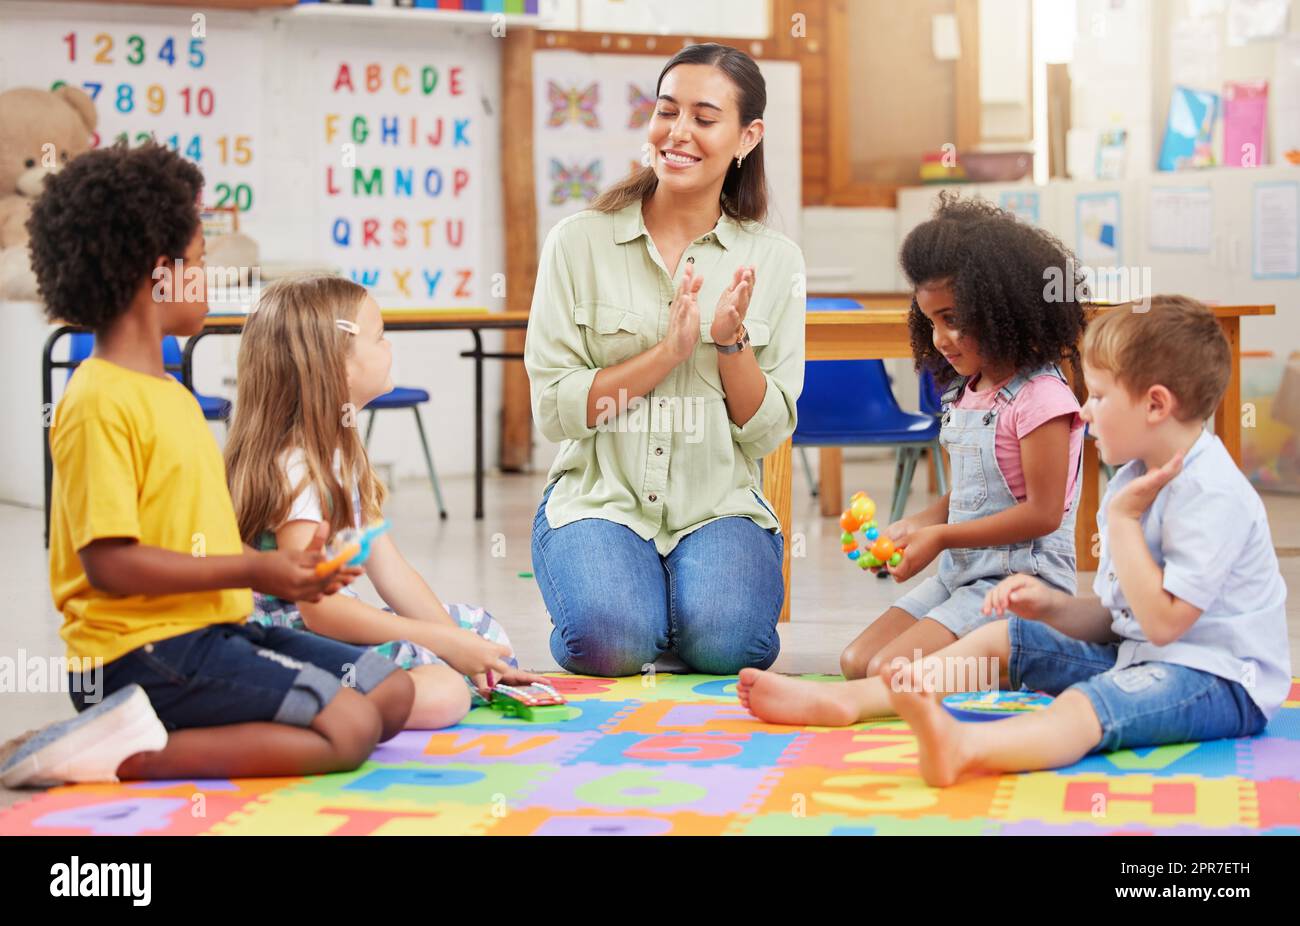 Wenn du glücklich bist und es weißt, klatsche in die Hände. Aufnahme einer Lehrerin, die mit ihren Vorschulkindern singt. Stockfoto